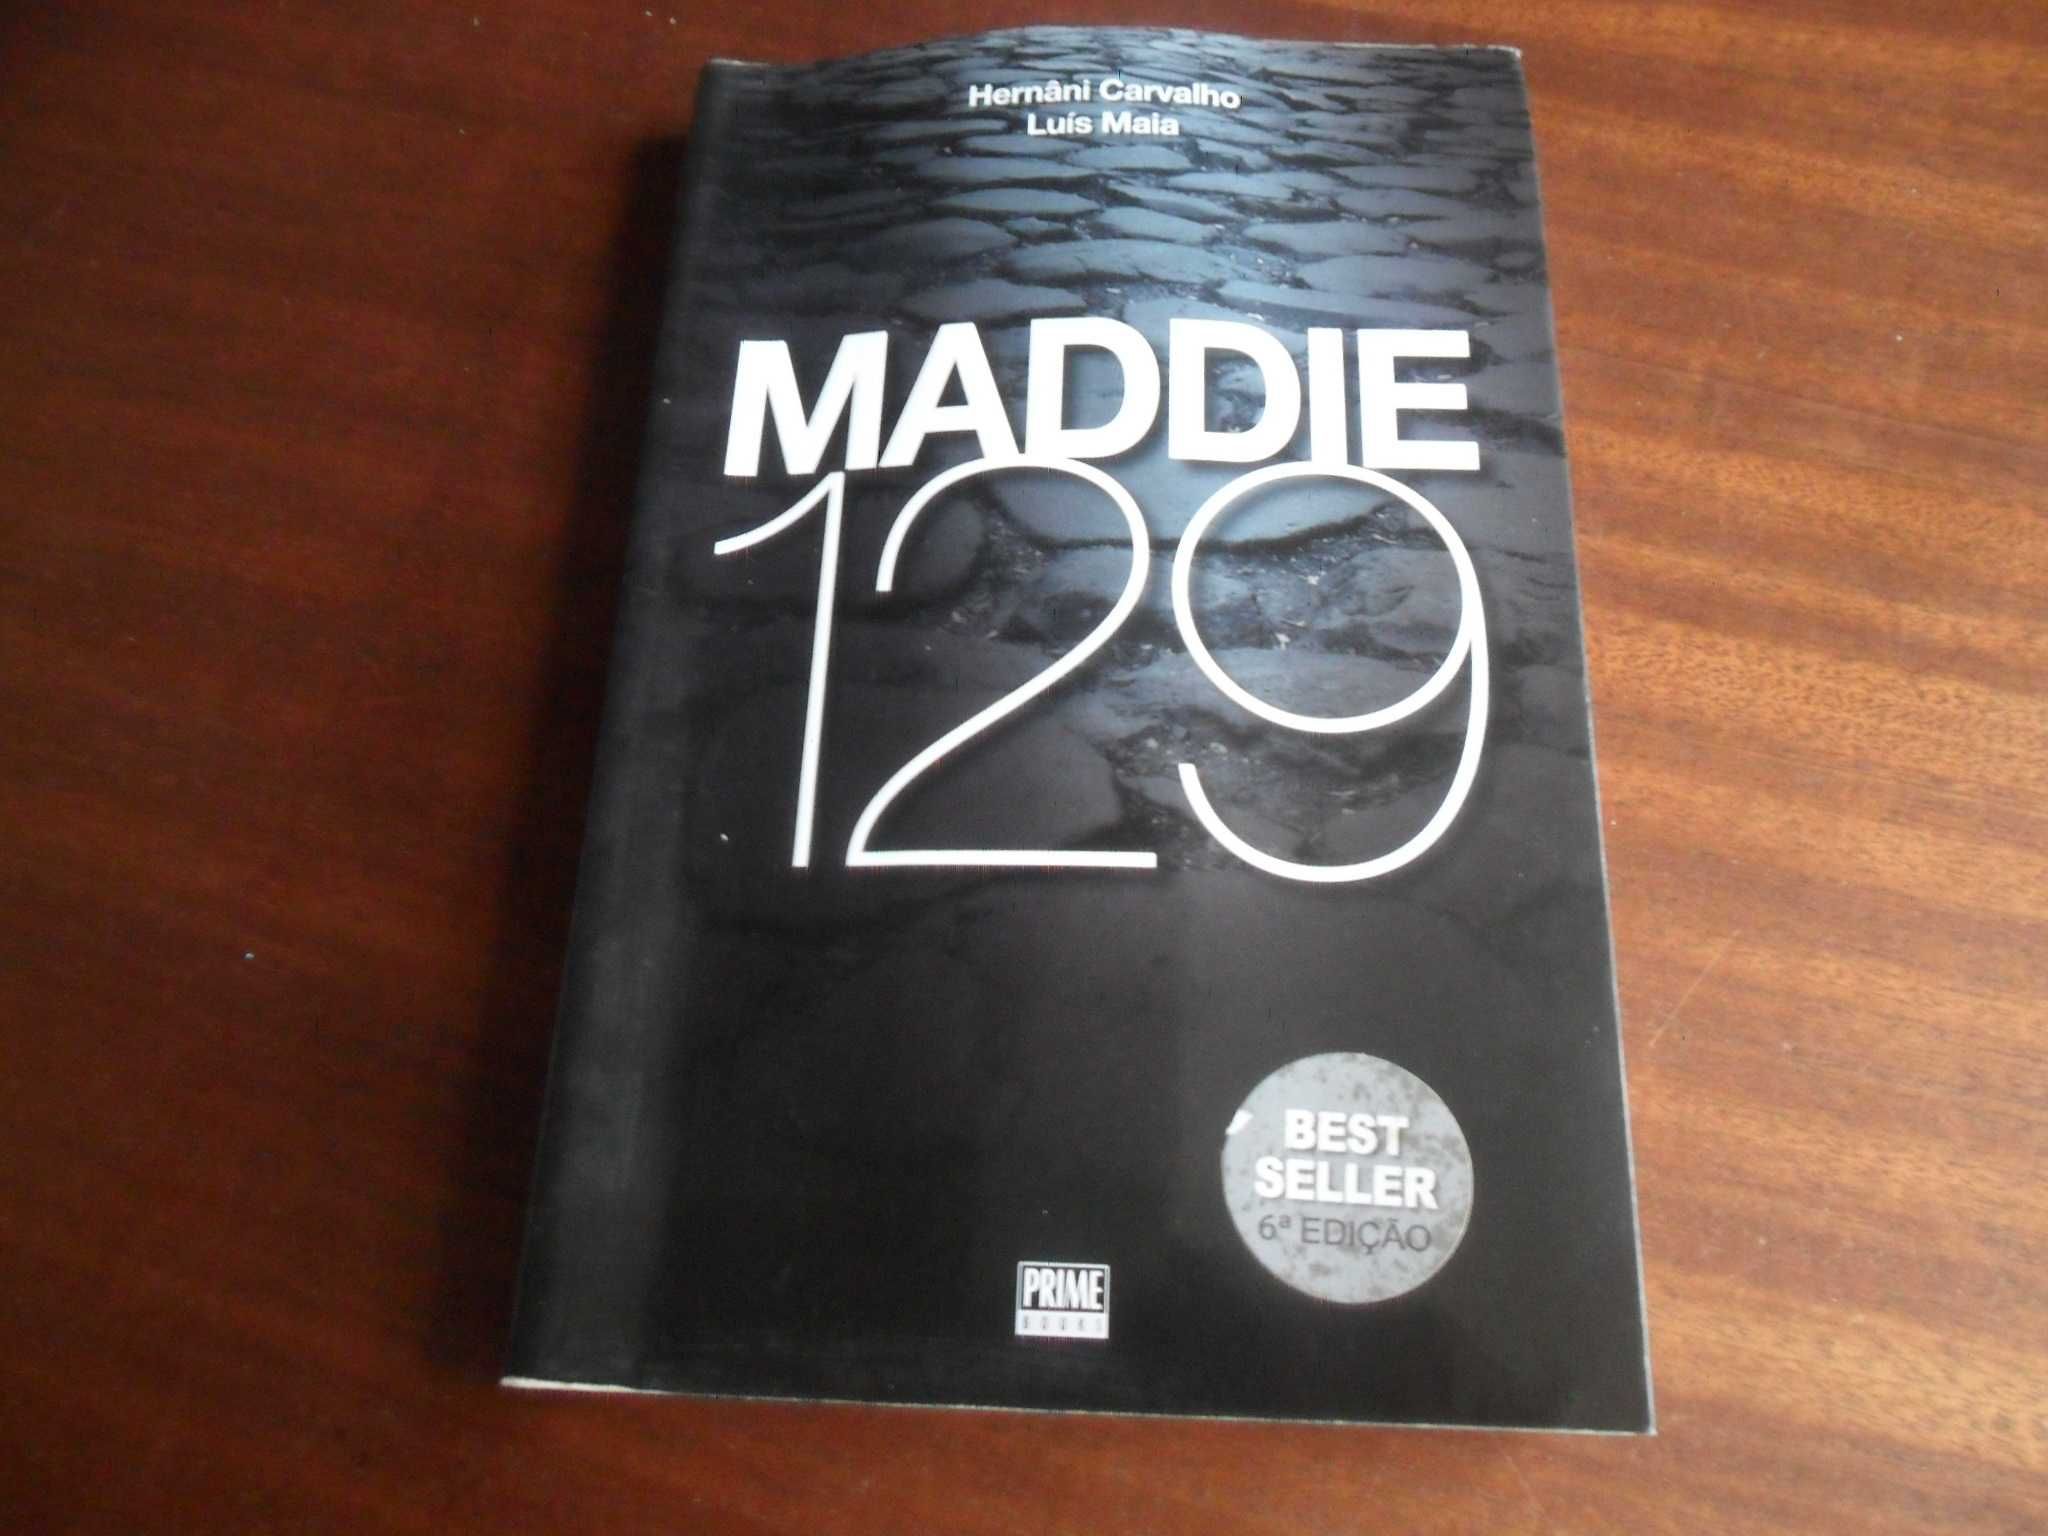 "Maddie 129" de Hernâni Carvalho e Luís Maia - 6ª Edição de 2007